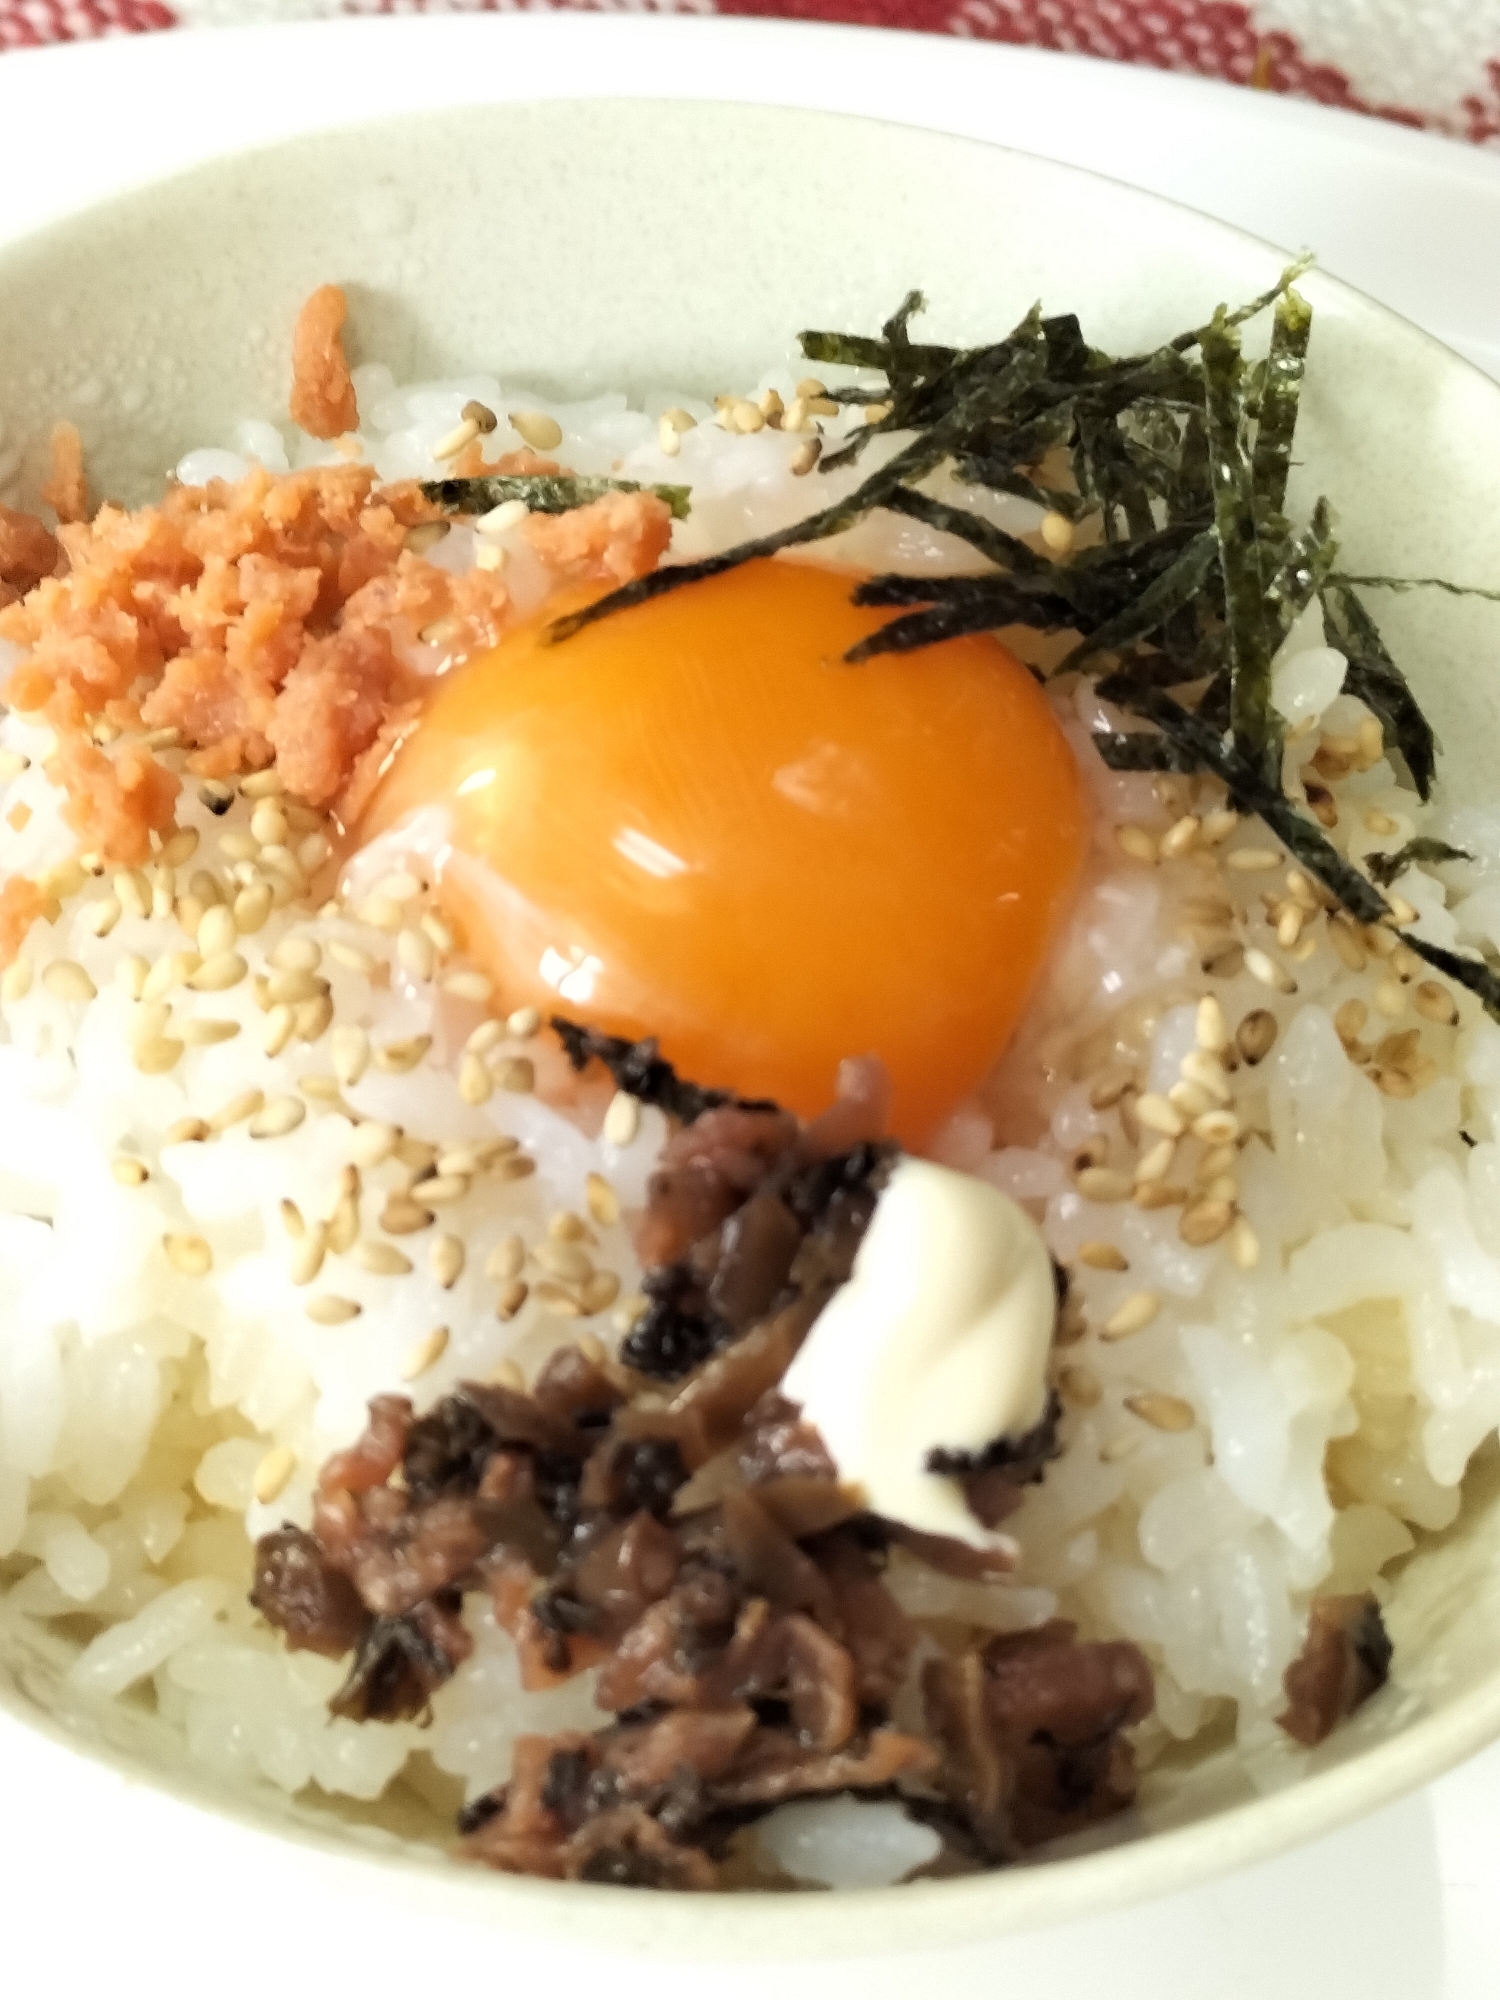 サケフレーク・刻み海苔・京漬物の卵かけご飯だよ〜♪